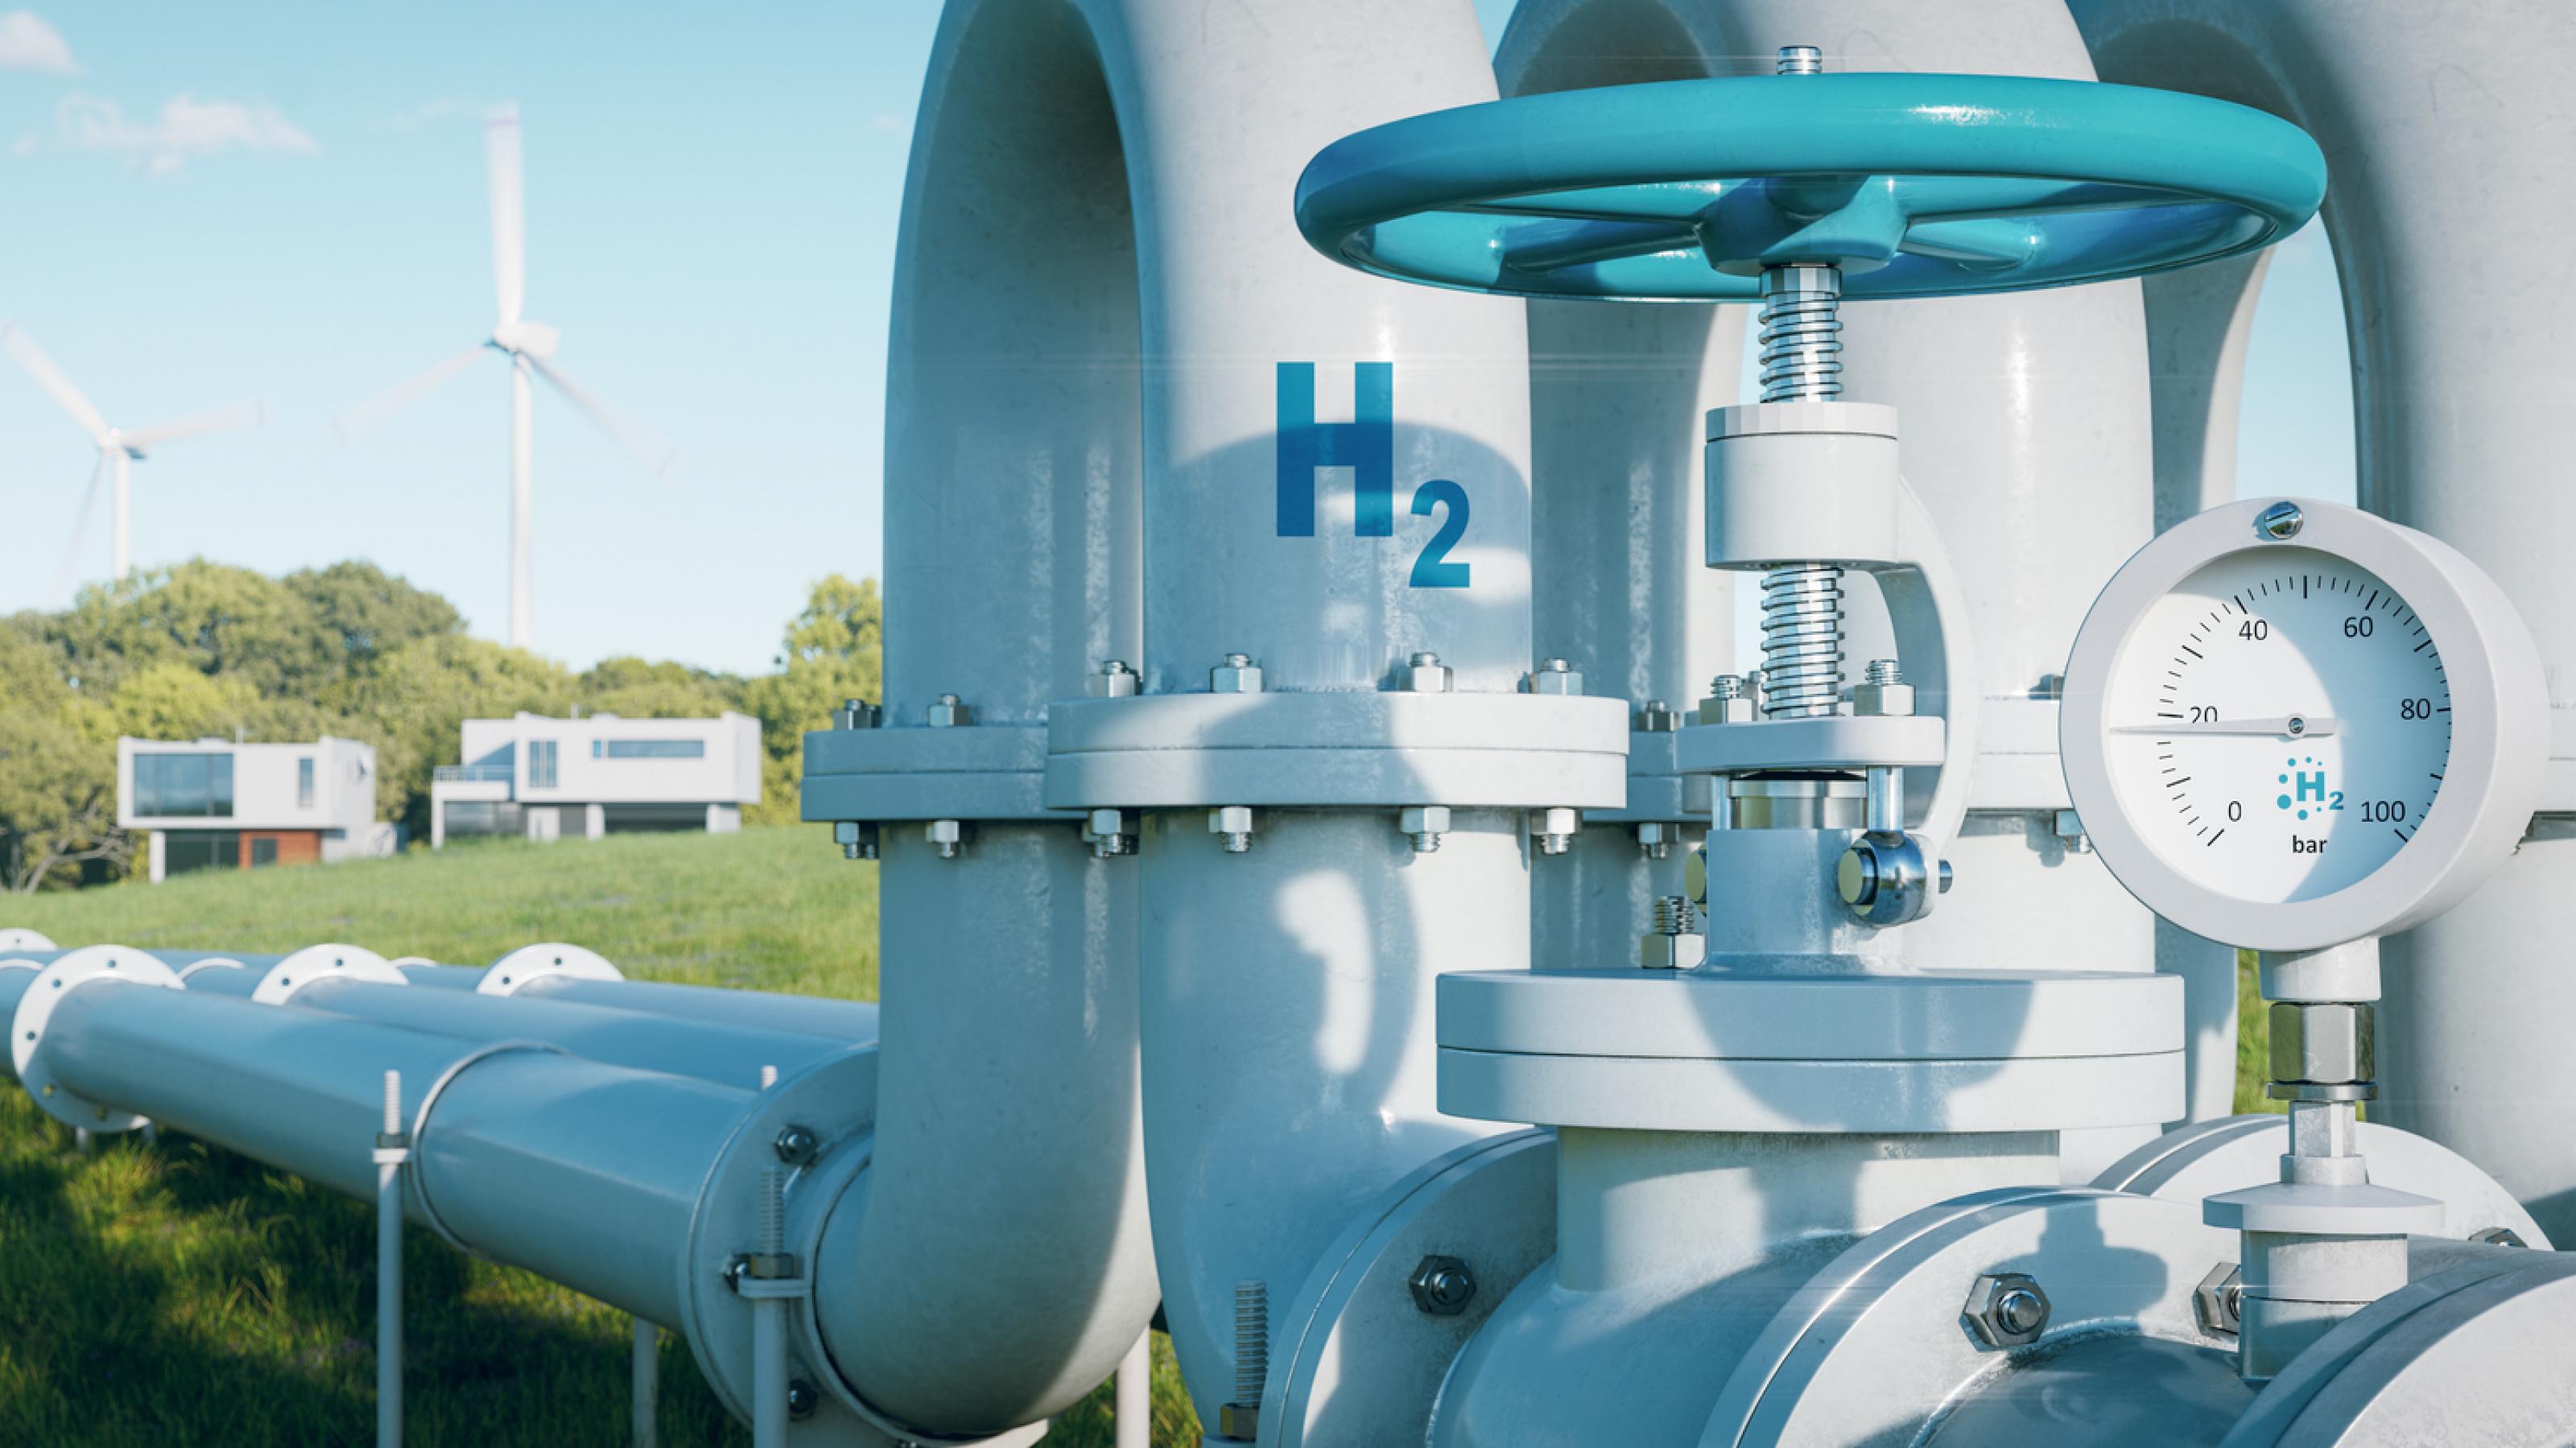 Etwa die Hälfte des Erdgas-Netzes in Deutschland wird auf Wasserstoff umgestellt – neue Wasserstoff-Leitungen wie hier im Bild sind in Planung